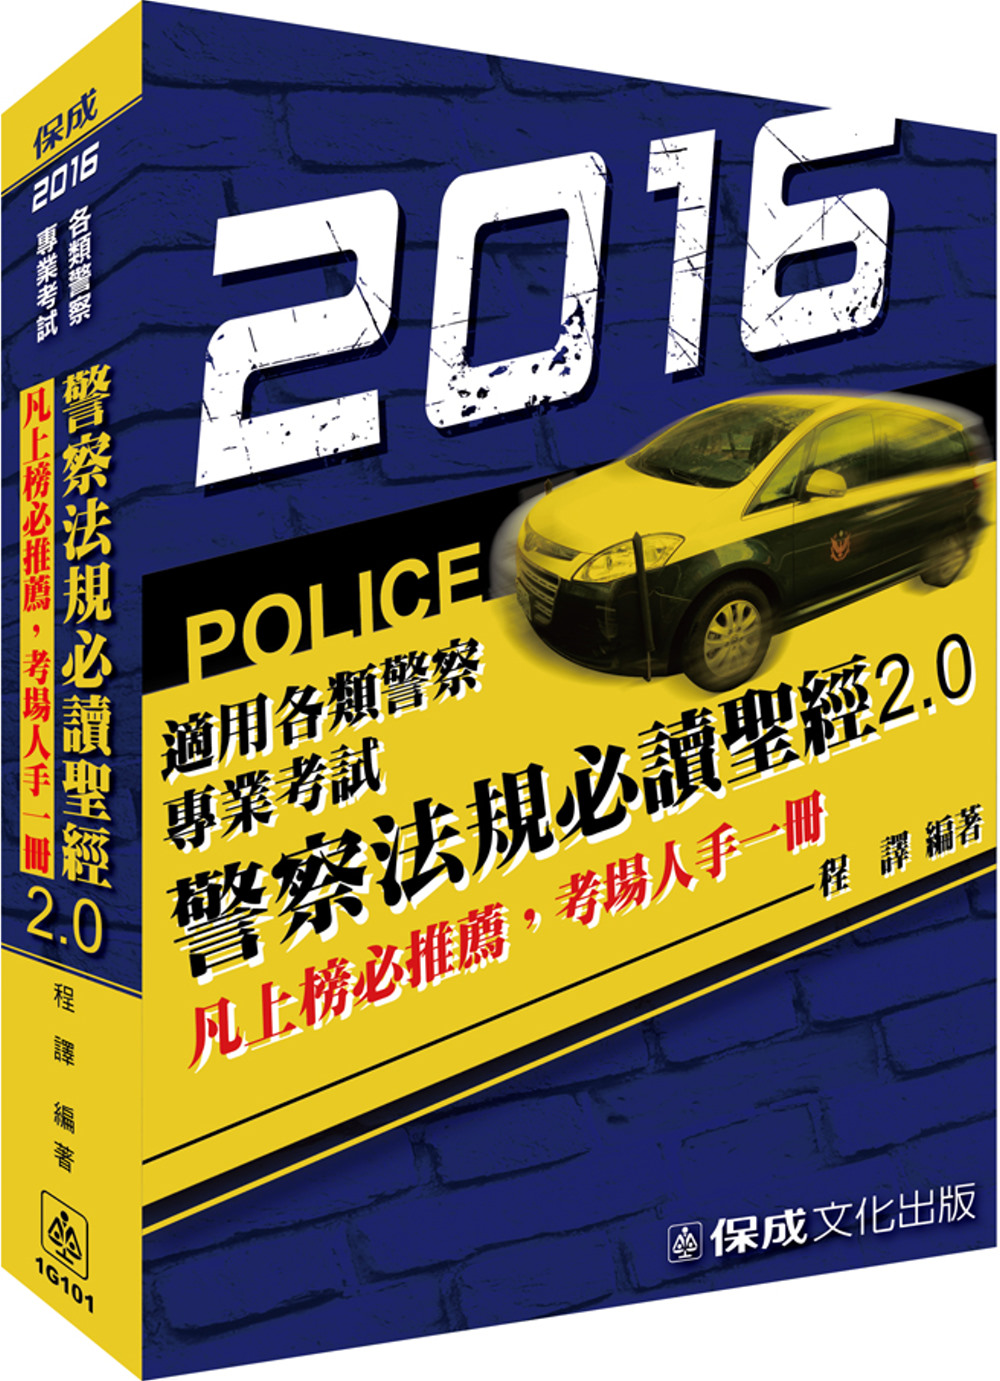 警察法規必讀聖經2.0-2016警察特考<保成>